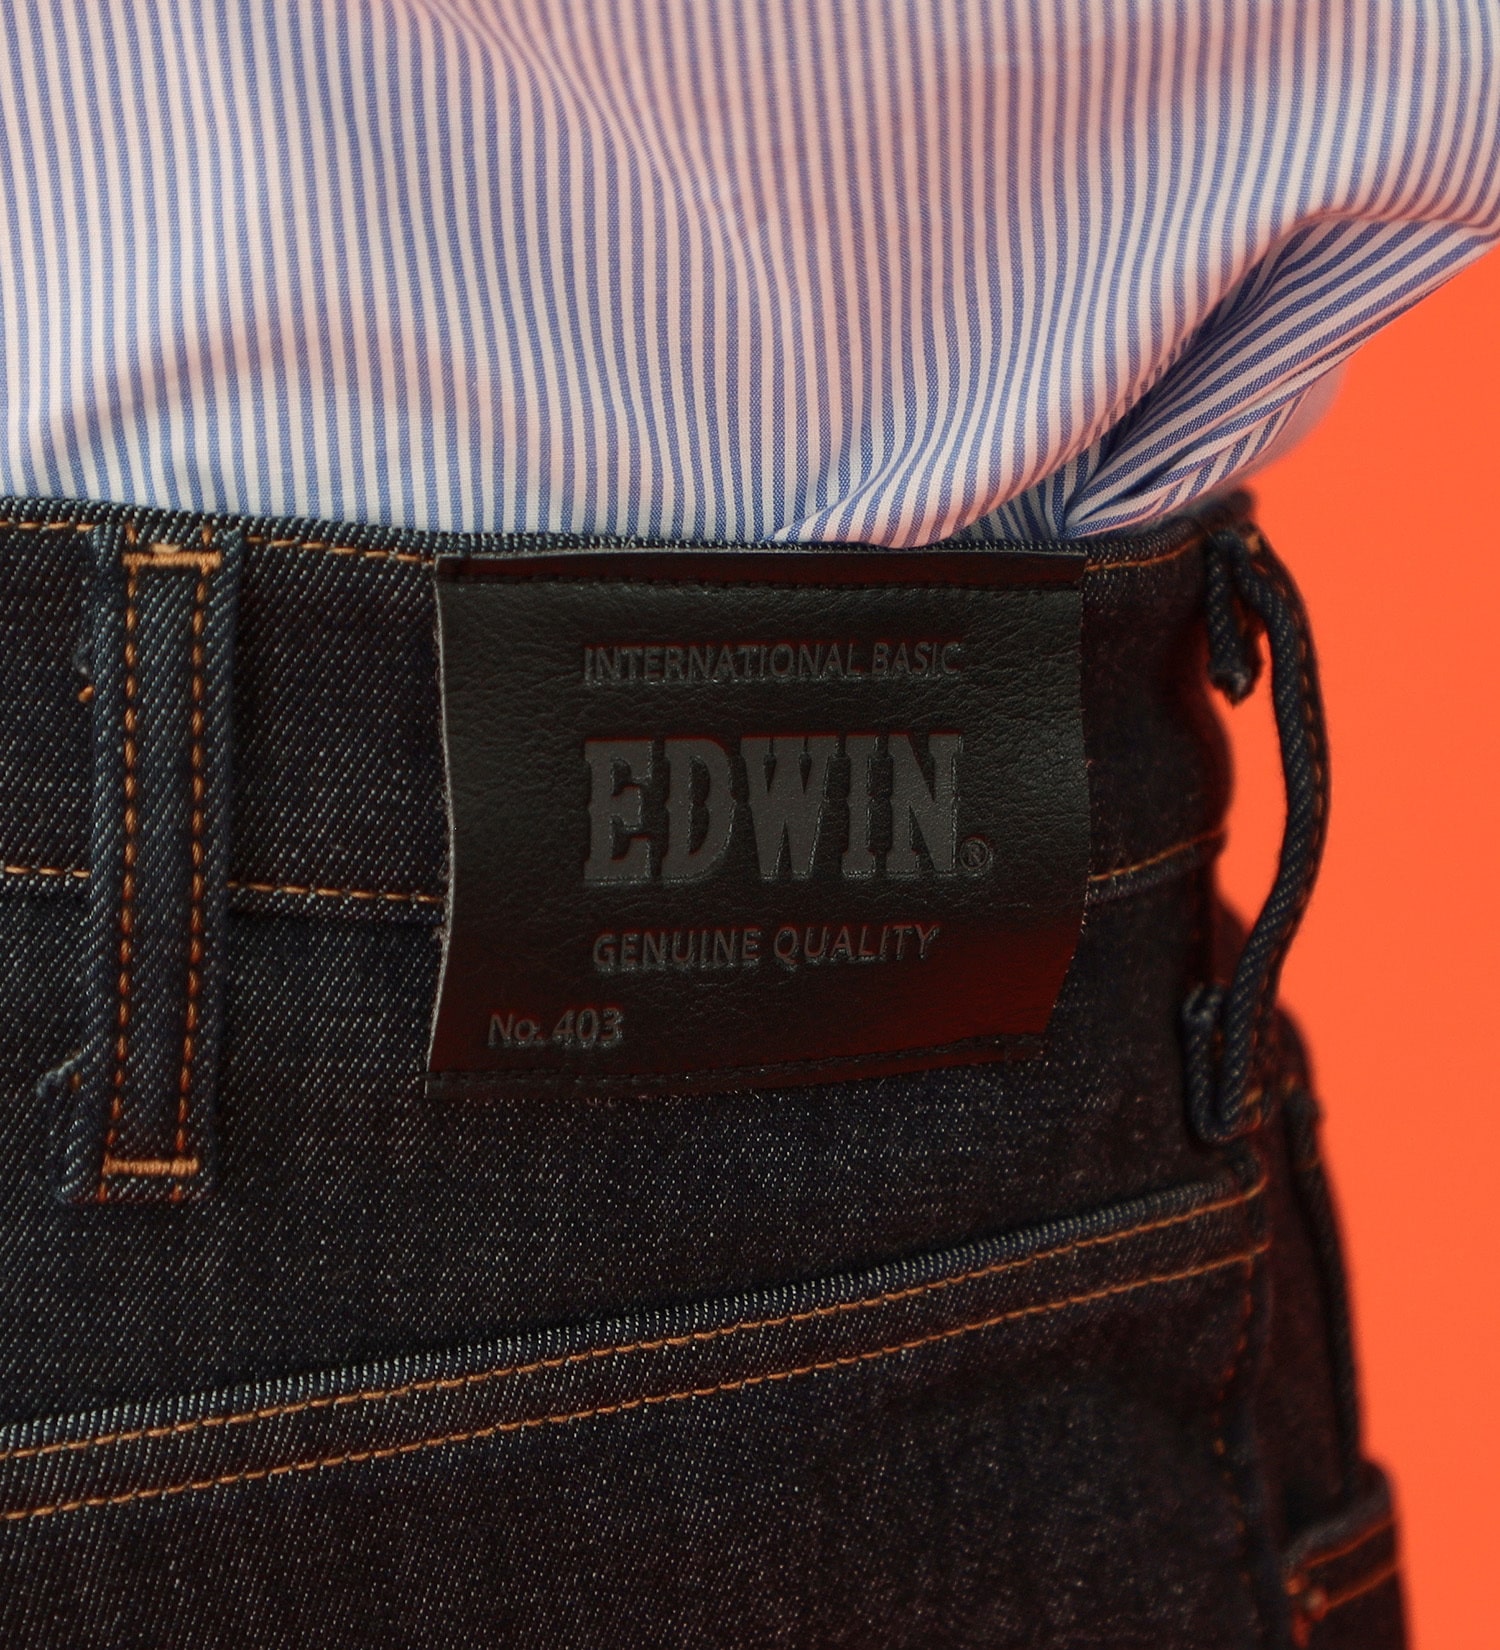 EDWIN(エドウイン)の【先行SALE】【大きいサイズ】2層で暖かい EDWIN インターナショナルベーシック レギュラーストレートパンツ403 WILD FIRE 2層ボンディング構造 【暖】|パンツ/パンツ/メンズ|インディゴブルー